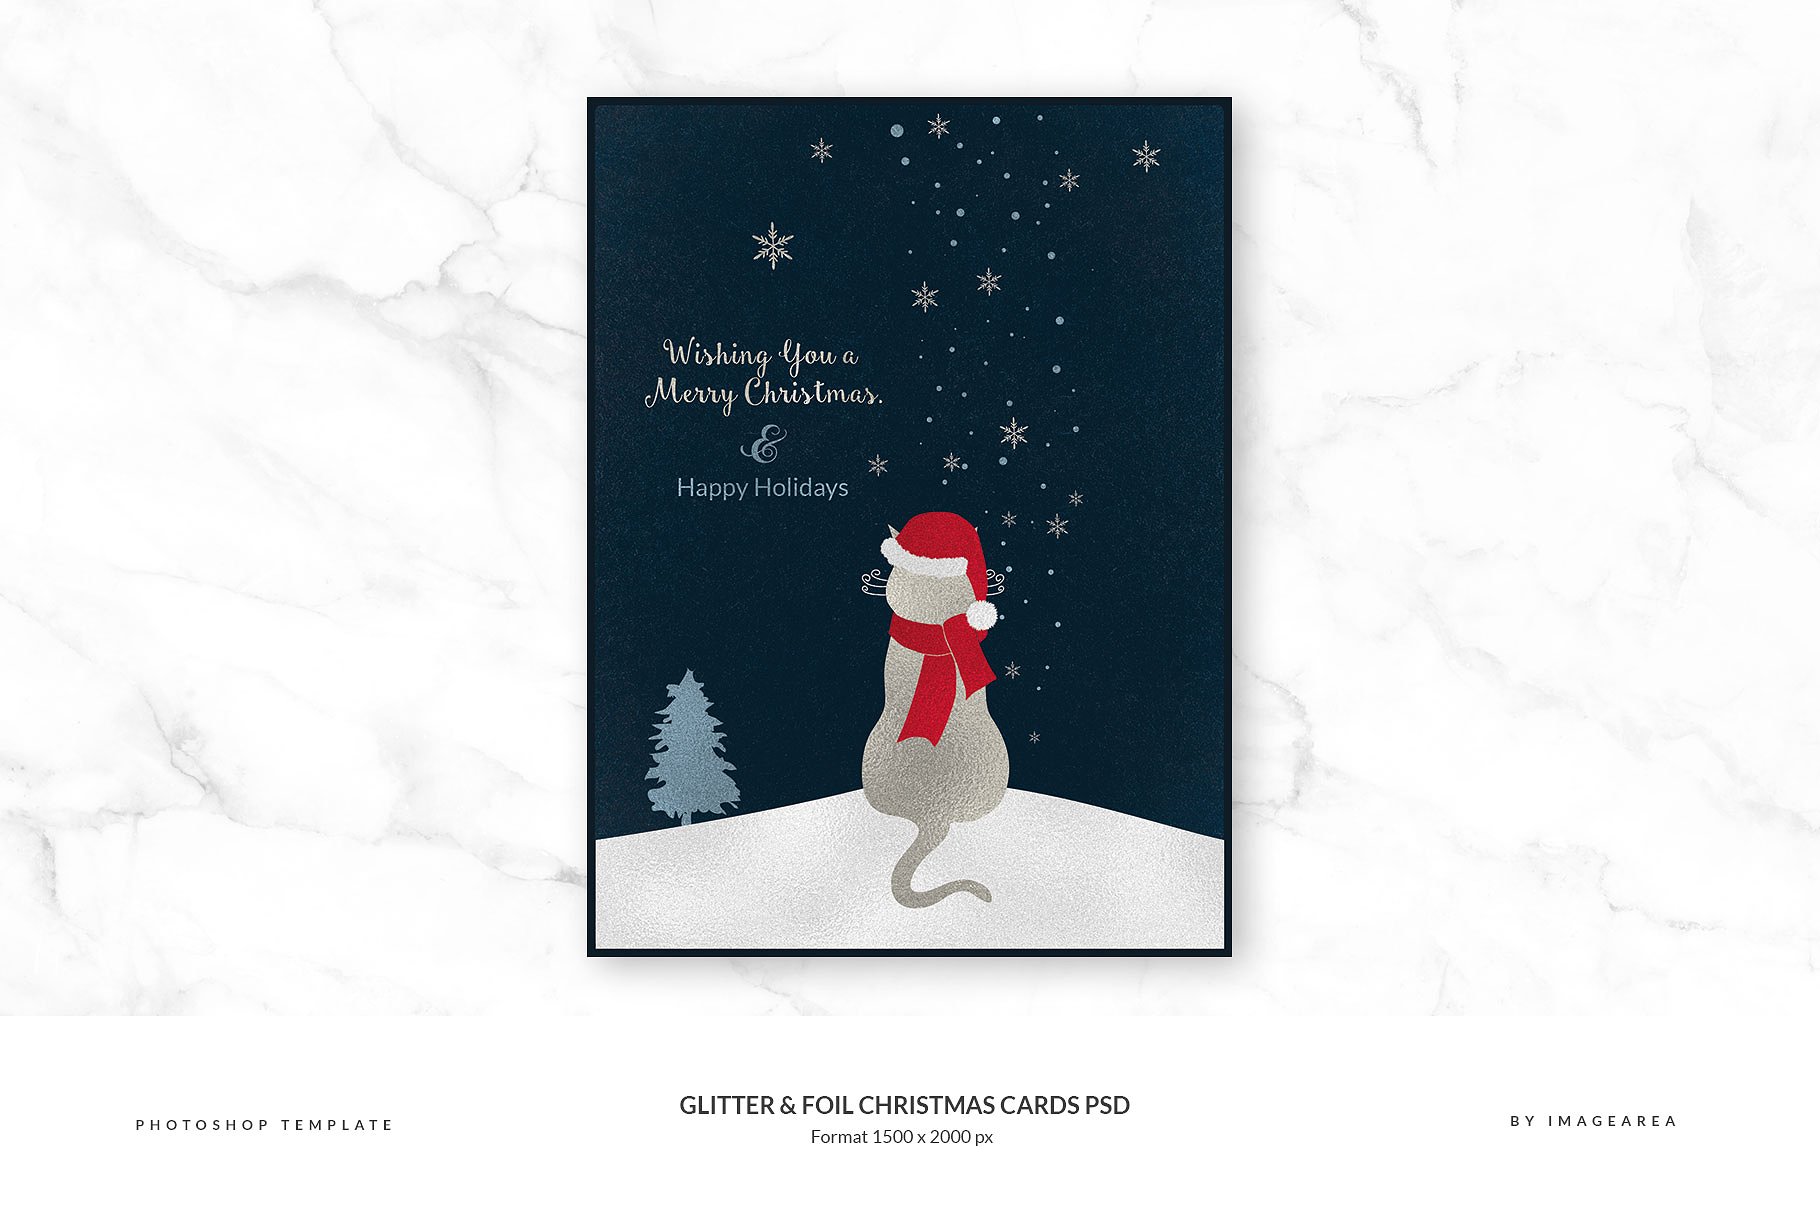 闪粉&金箔圣诞卡PSD模板合集 Glitter & Foil Christmas Cards PSD插图4